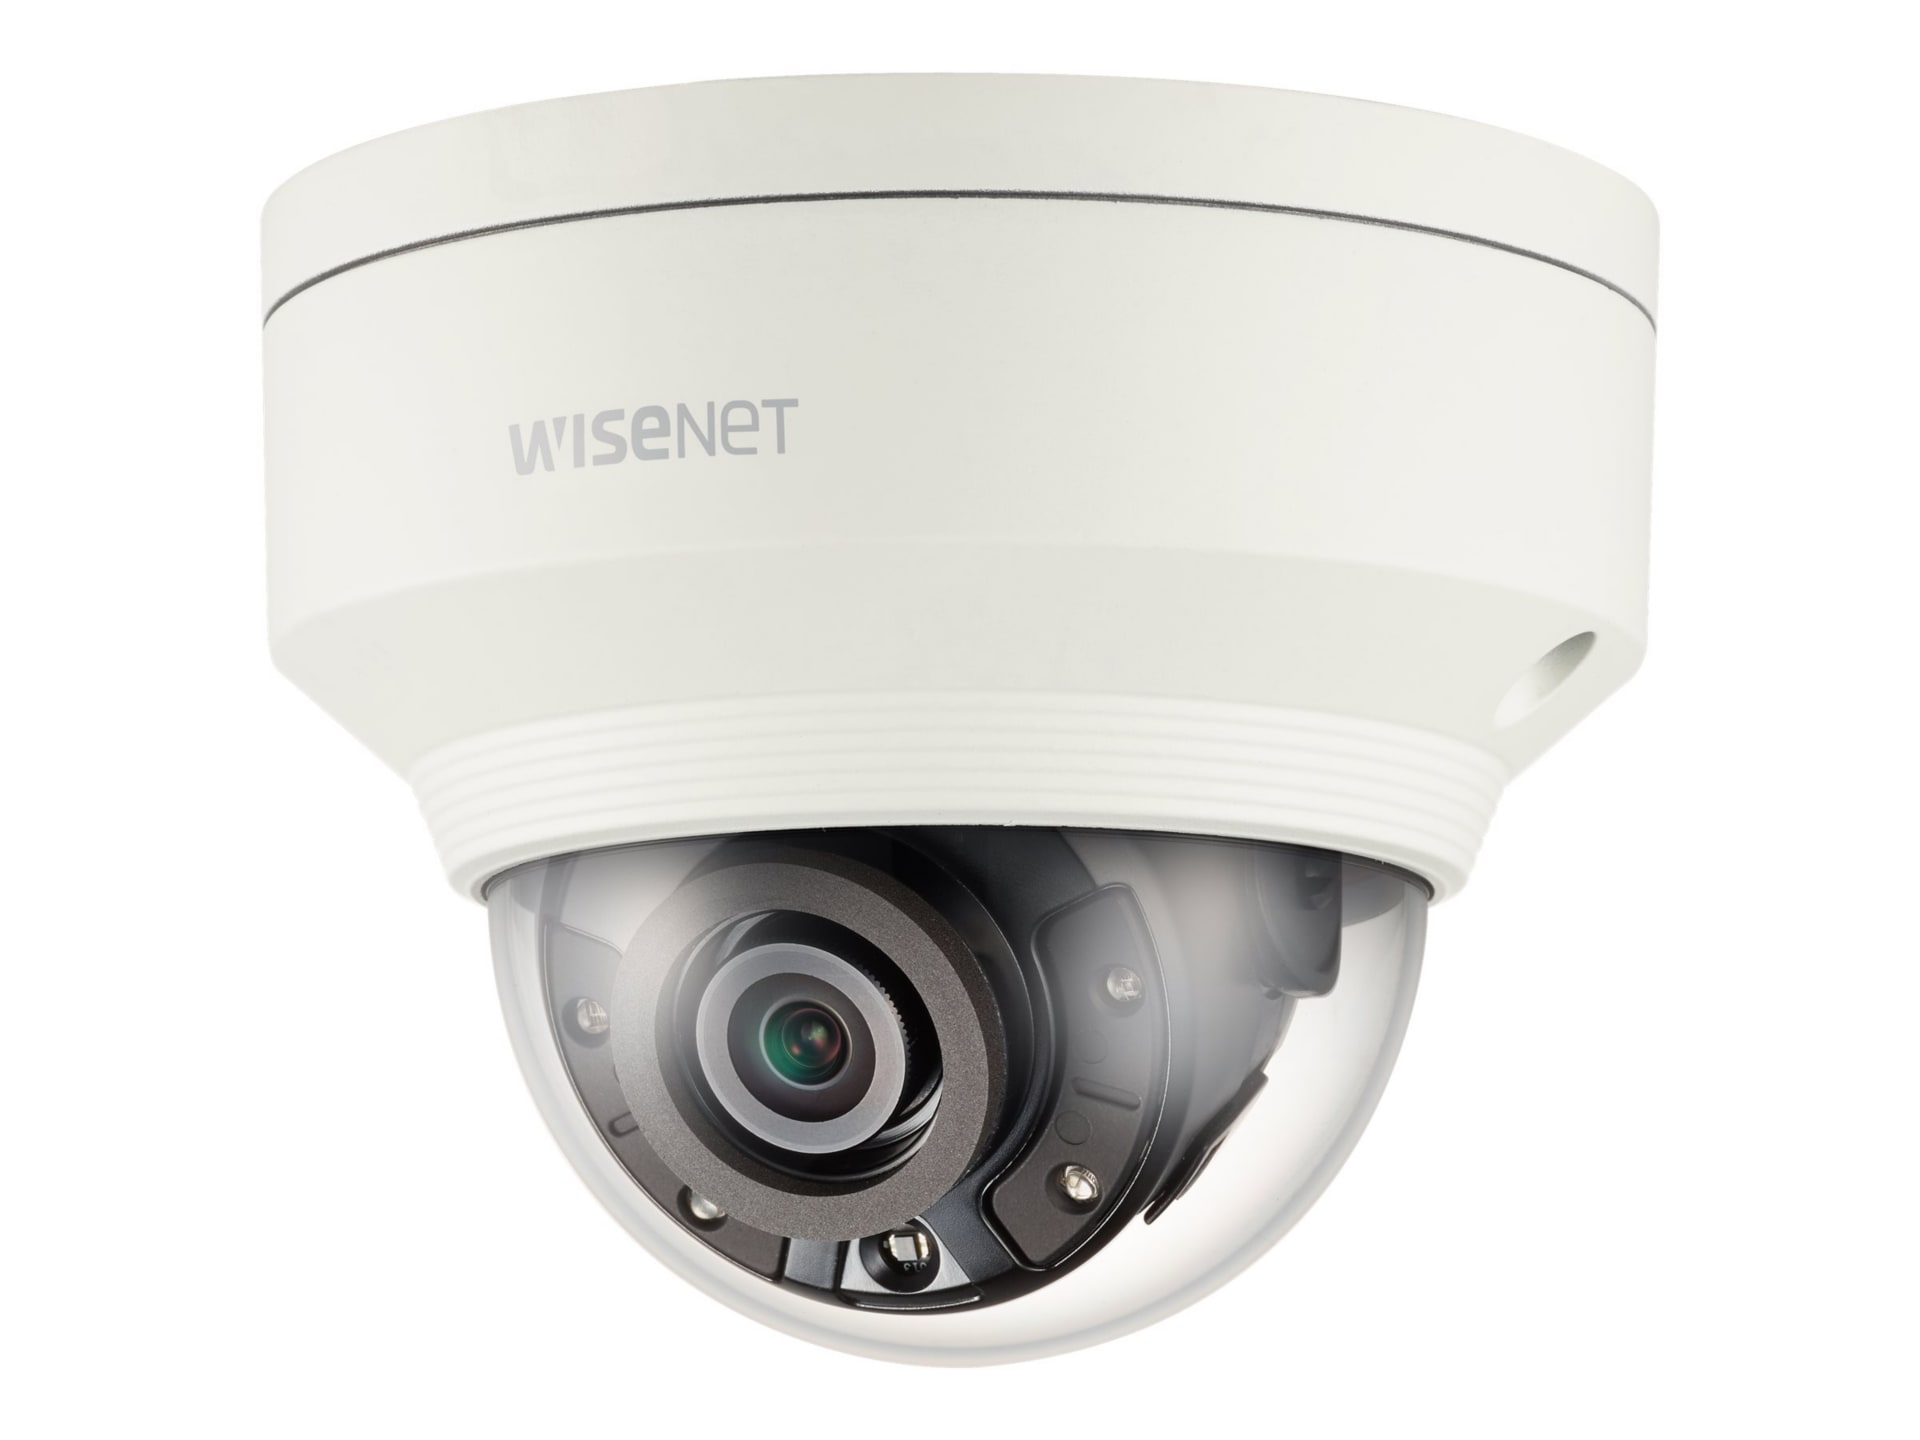 Samsung WiseNet X XNV-8020R - network surveillance camera